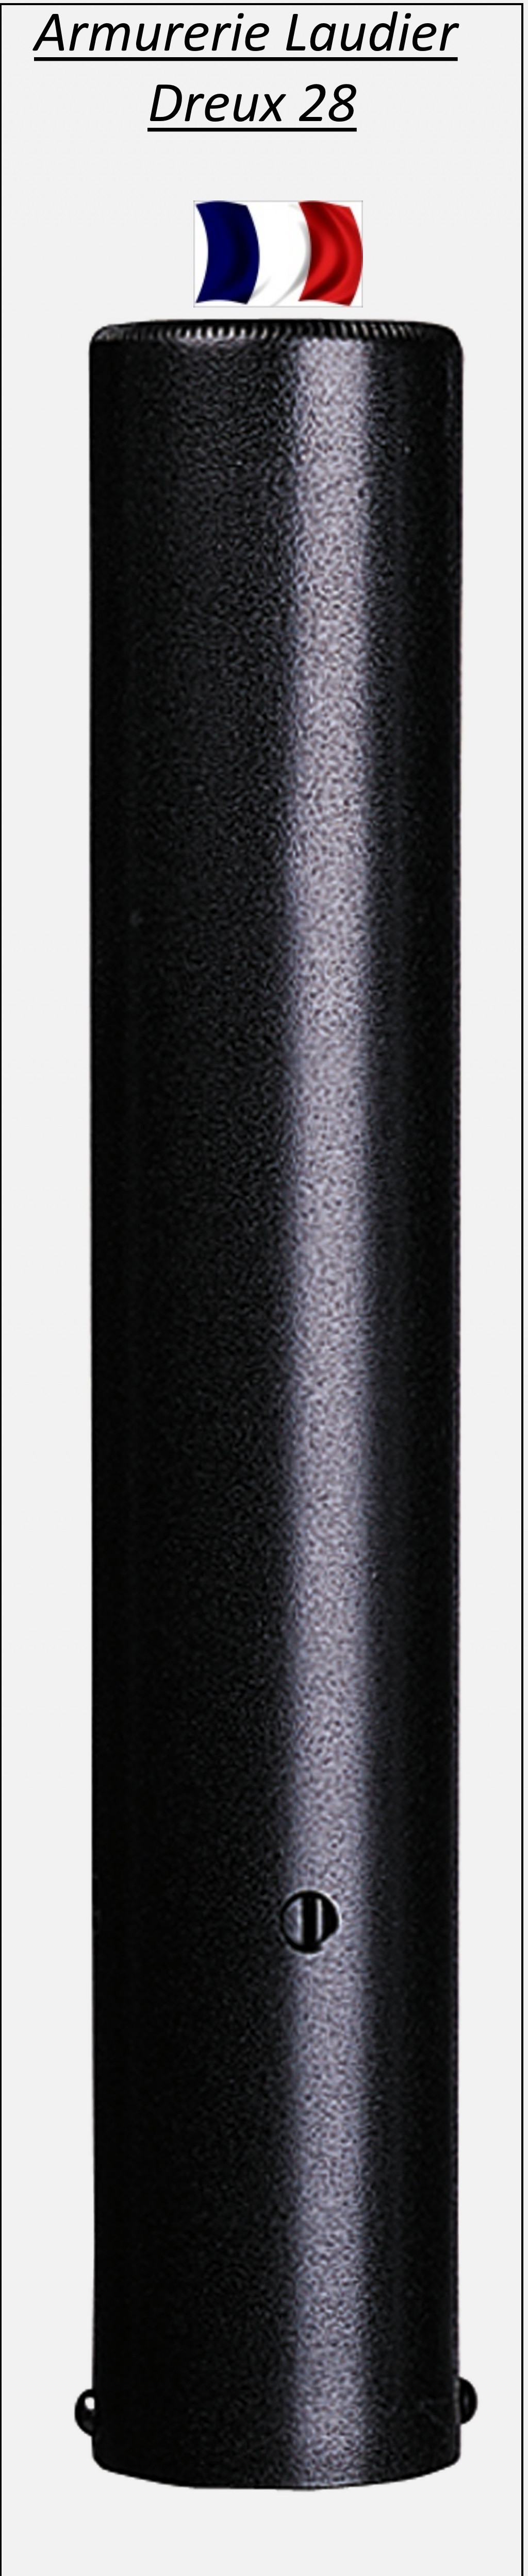 Silencieux STILL N° 3 calibre 22 Lr et 4.5m/m air comprimé Démontable-Ref 337